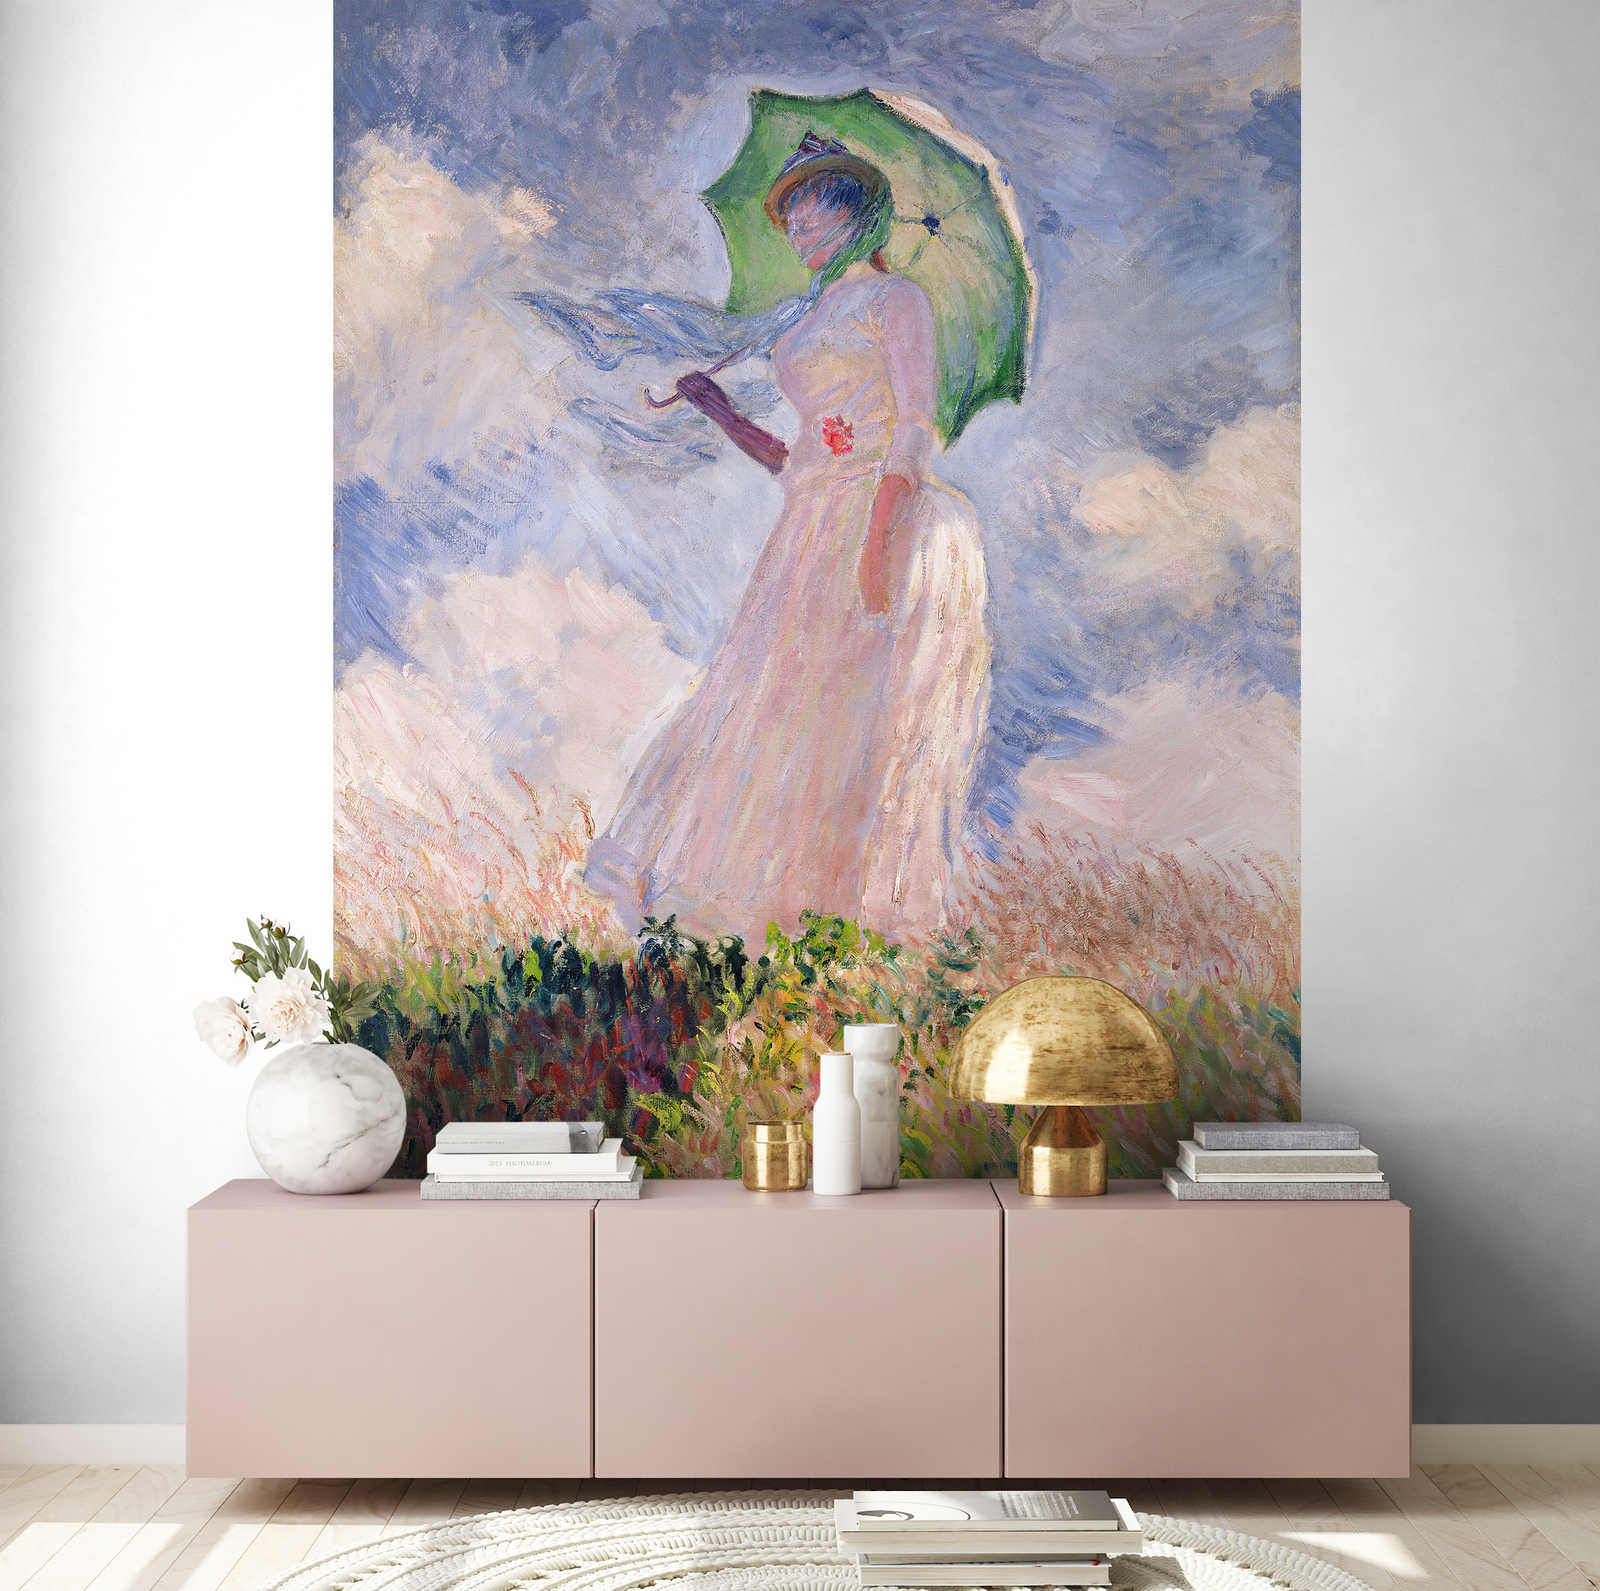             Fototapete "Frau mit Sonnenschirm nach links gewandt" von Claude Monet
        